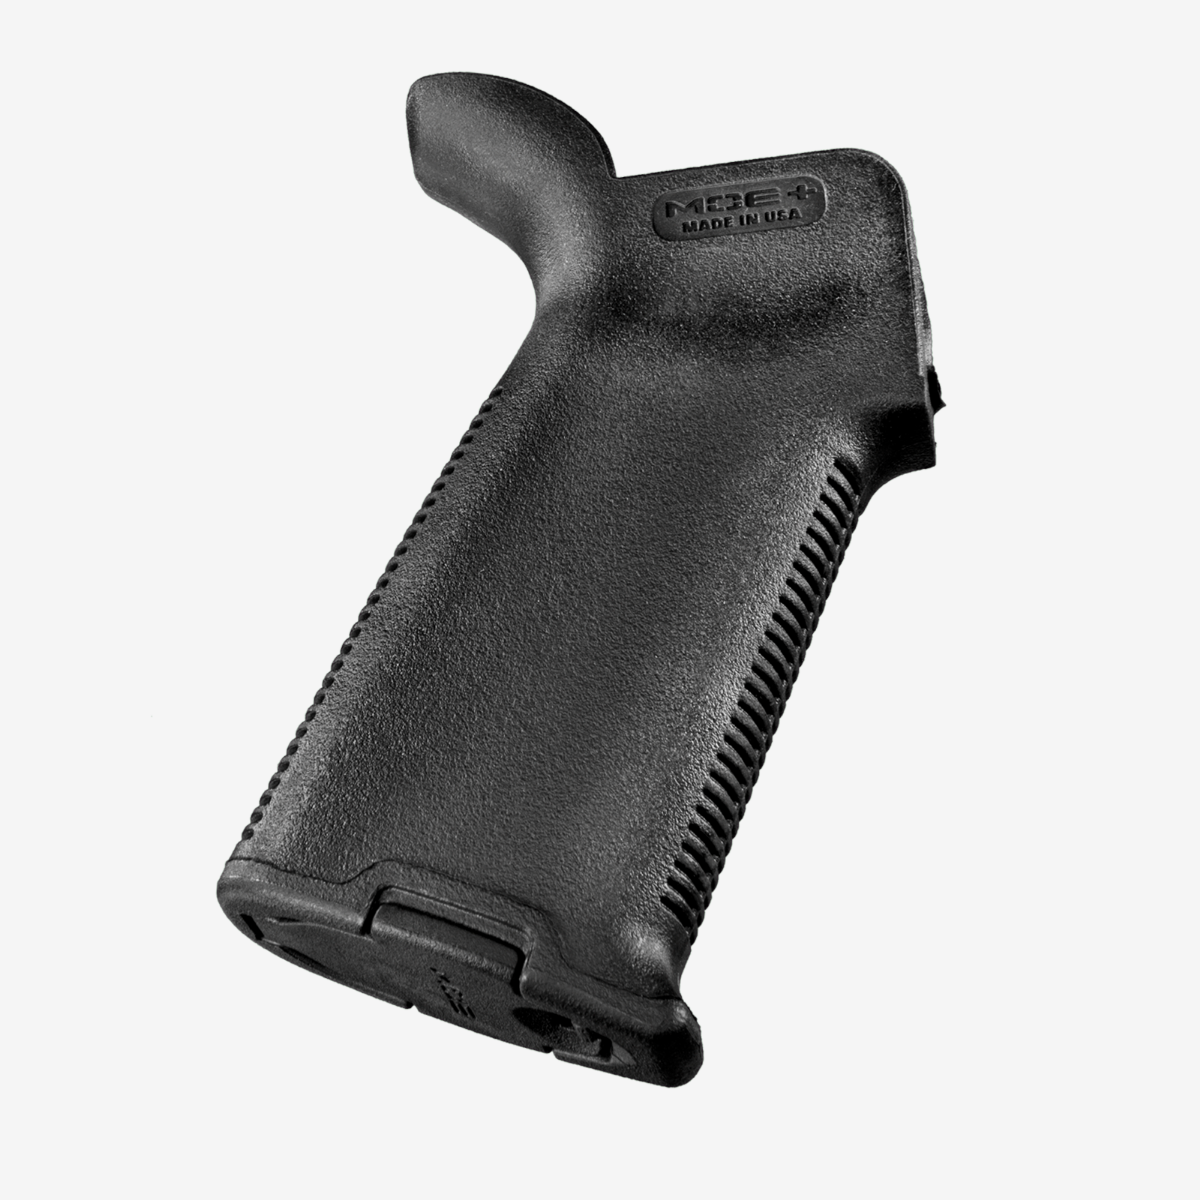 Рукоять пистолетная прорезиненная Magpul MOE+ Grip для AR15/M4 (MAG416) - фото 